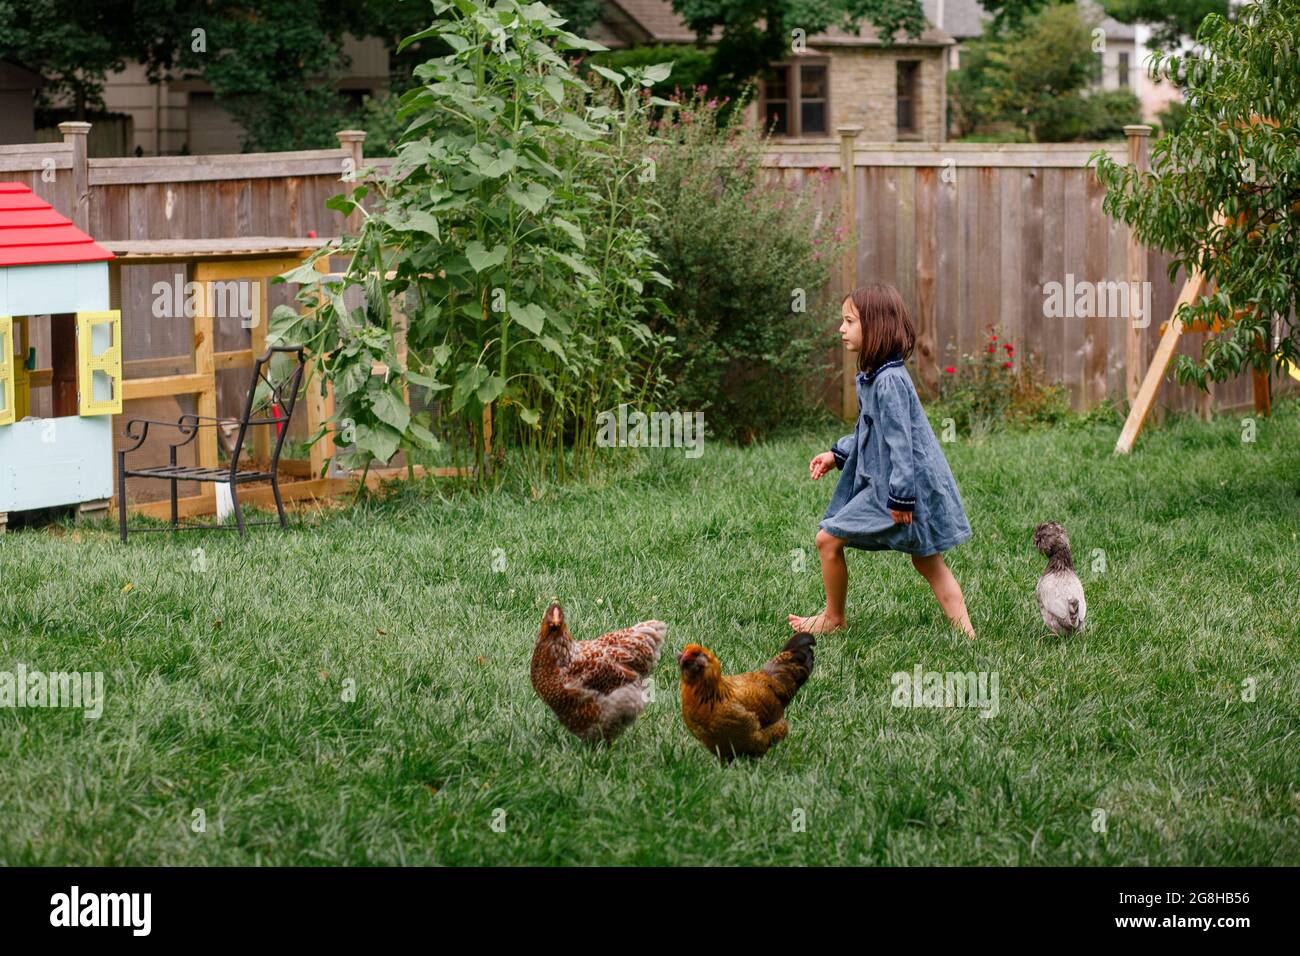 Una piccola ragazza a piedi nudi cammina in giardino con un gregge di polli da cortile Foto Stock